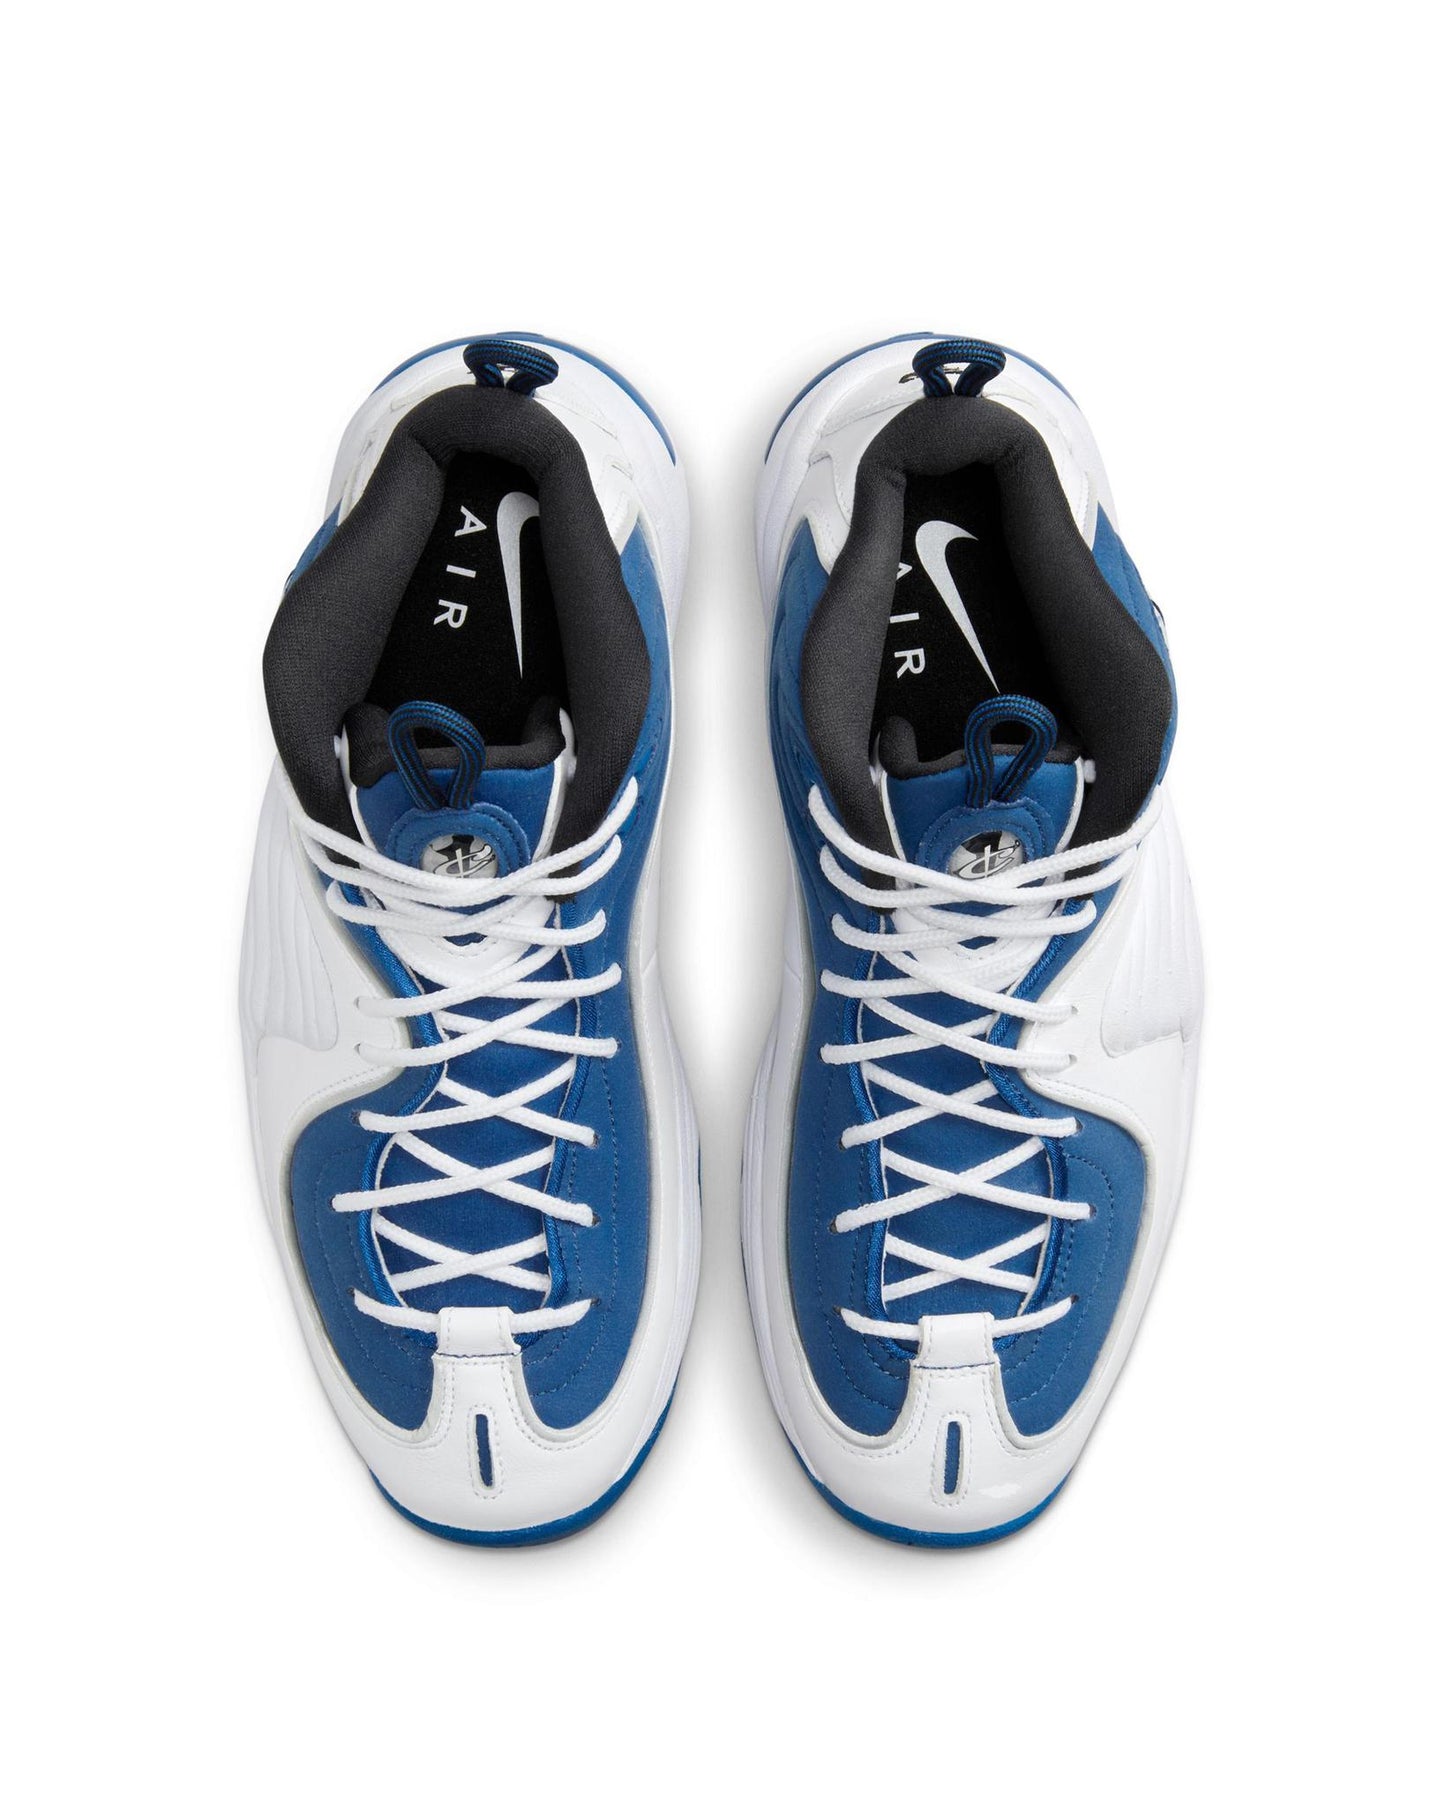 
                    
                      Nike Air Penny 2 "Atlantic Blue" QS
                    
                  